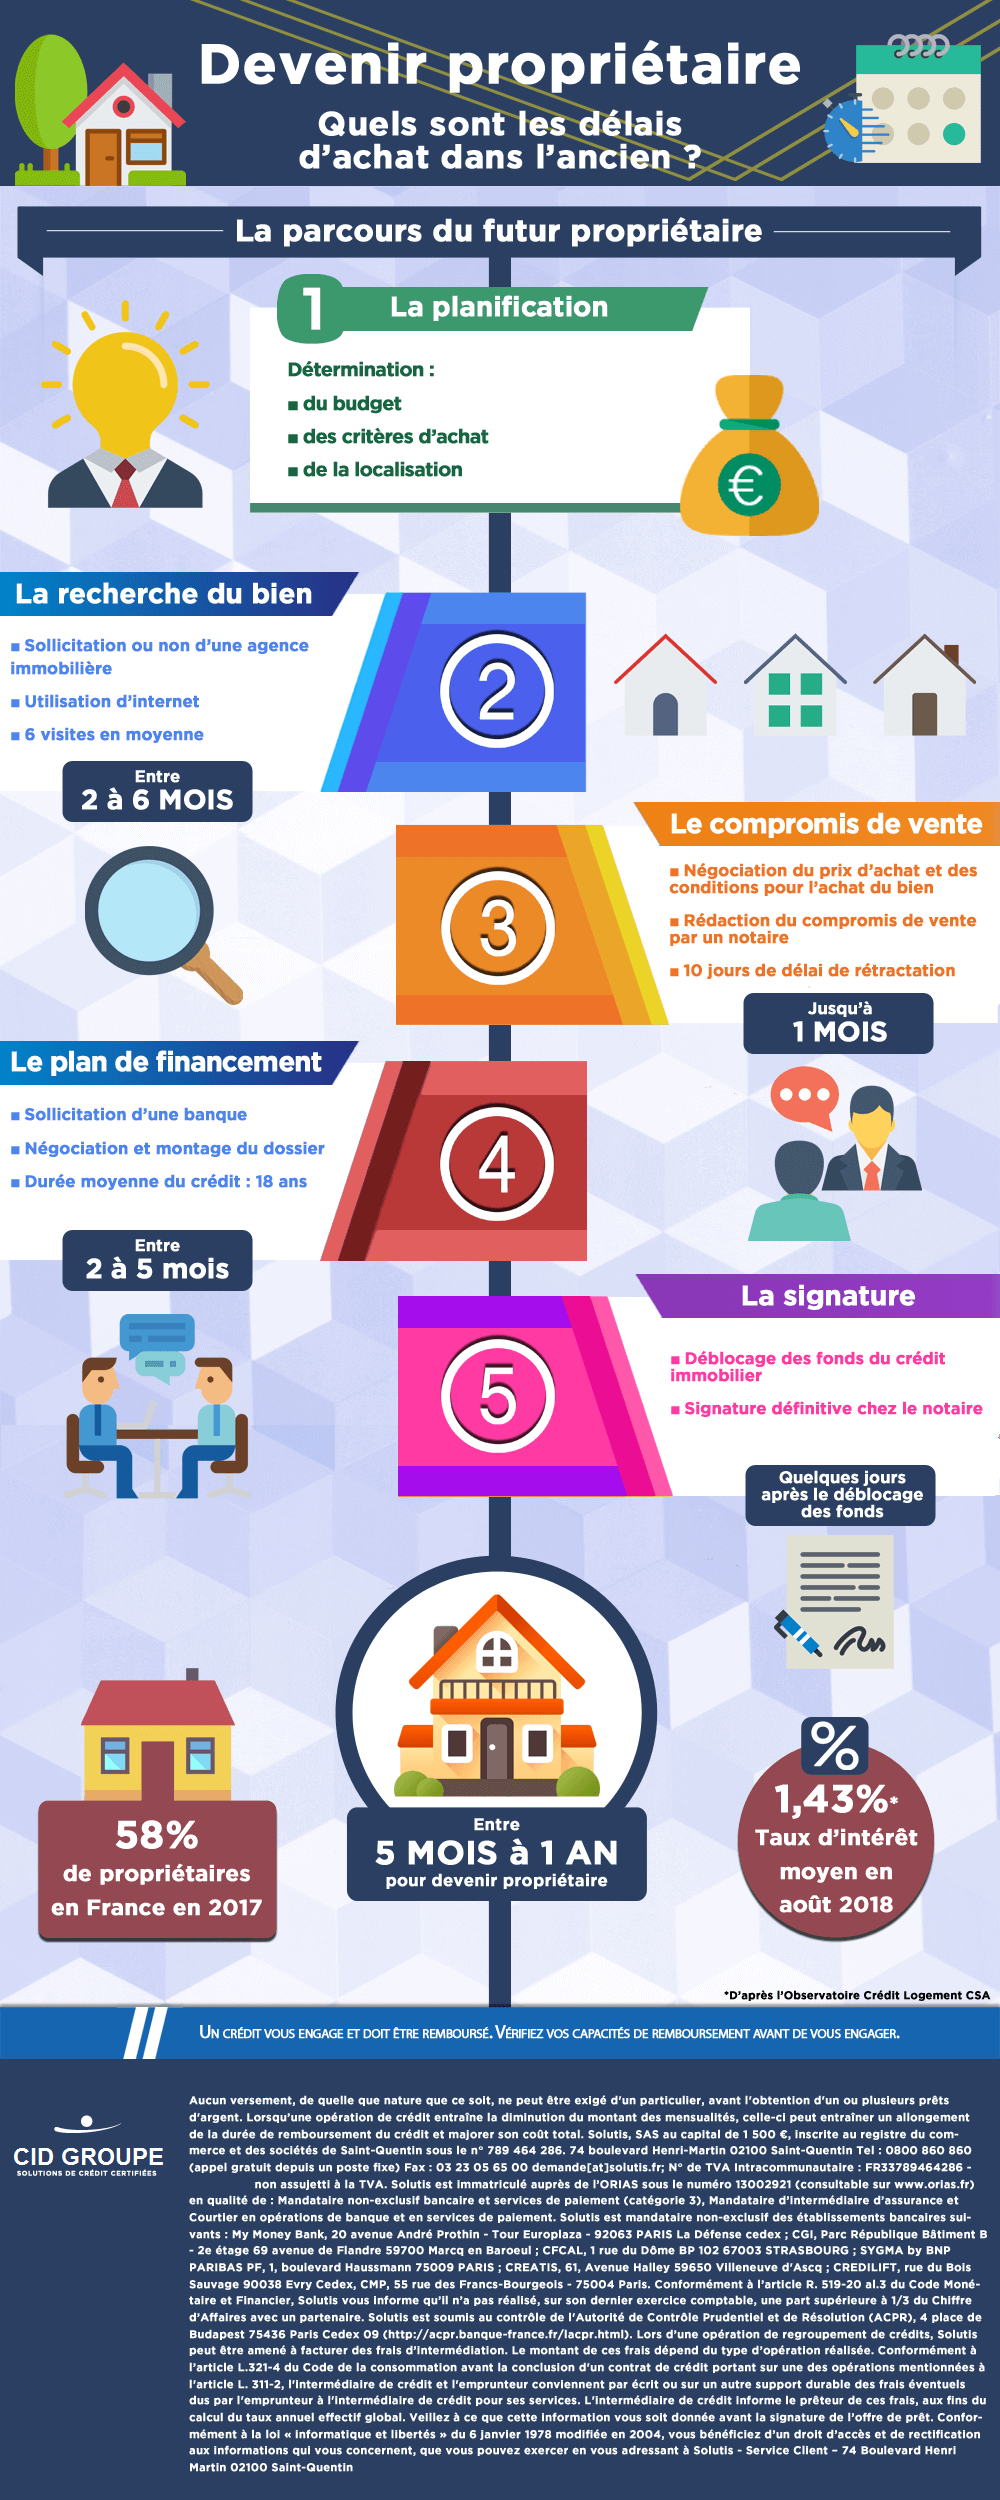 Infographie : quels sont les délais pour devenir propriétaire dans l’ancien en France ?